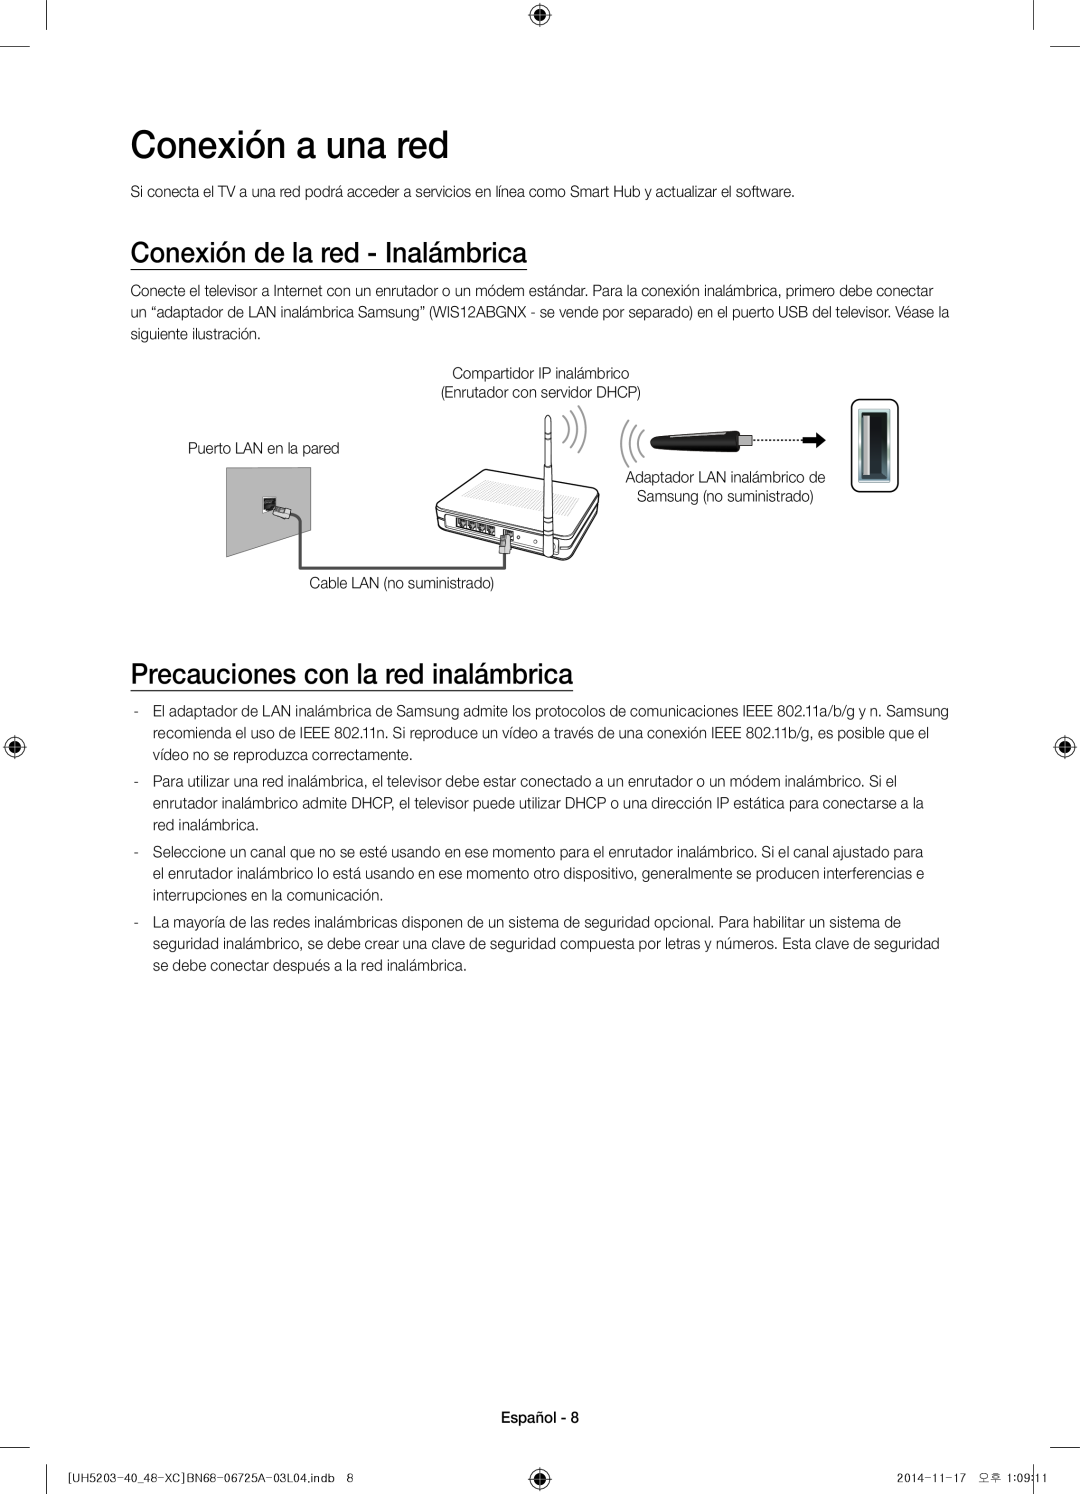 Samsung UE40H5203AWXXC manual Conexión a una red, Conexión de la red - Inalámbrica, Precauciones con la red inalámbrica 